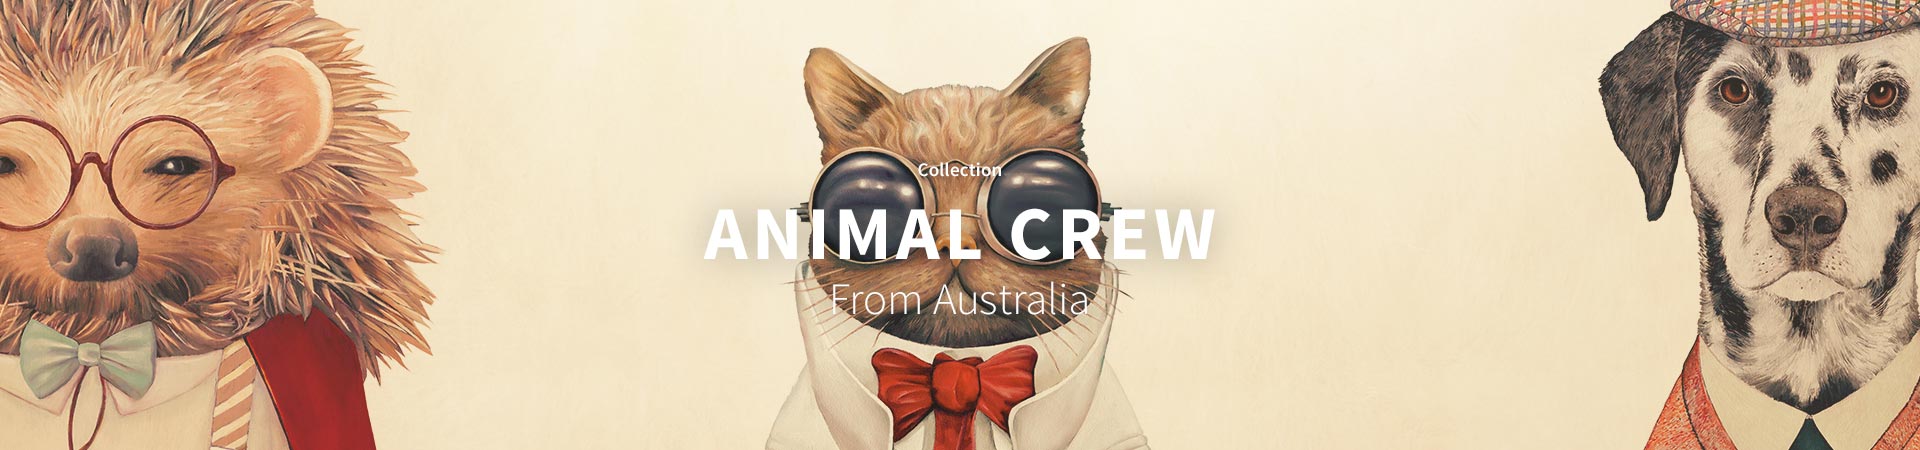 Animal Crew